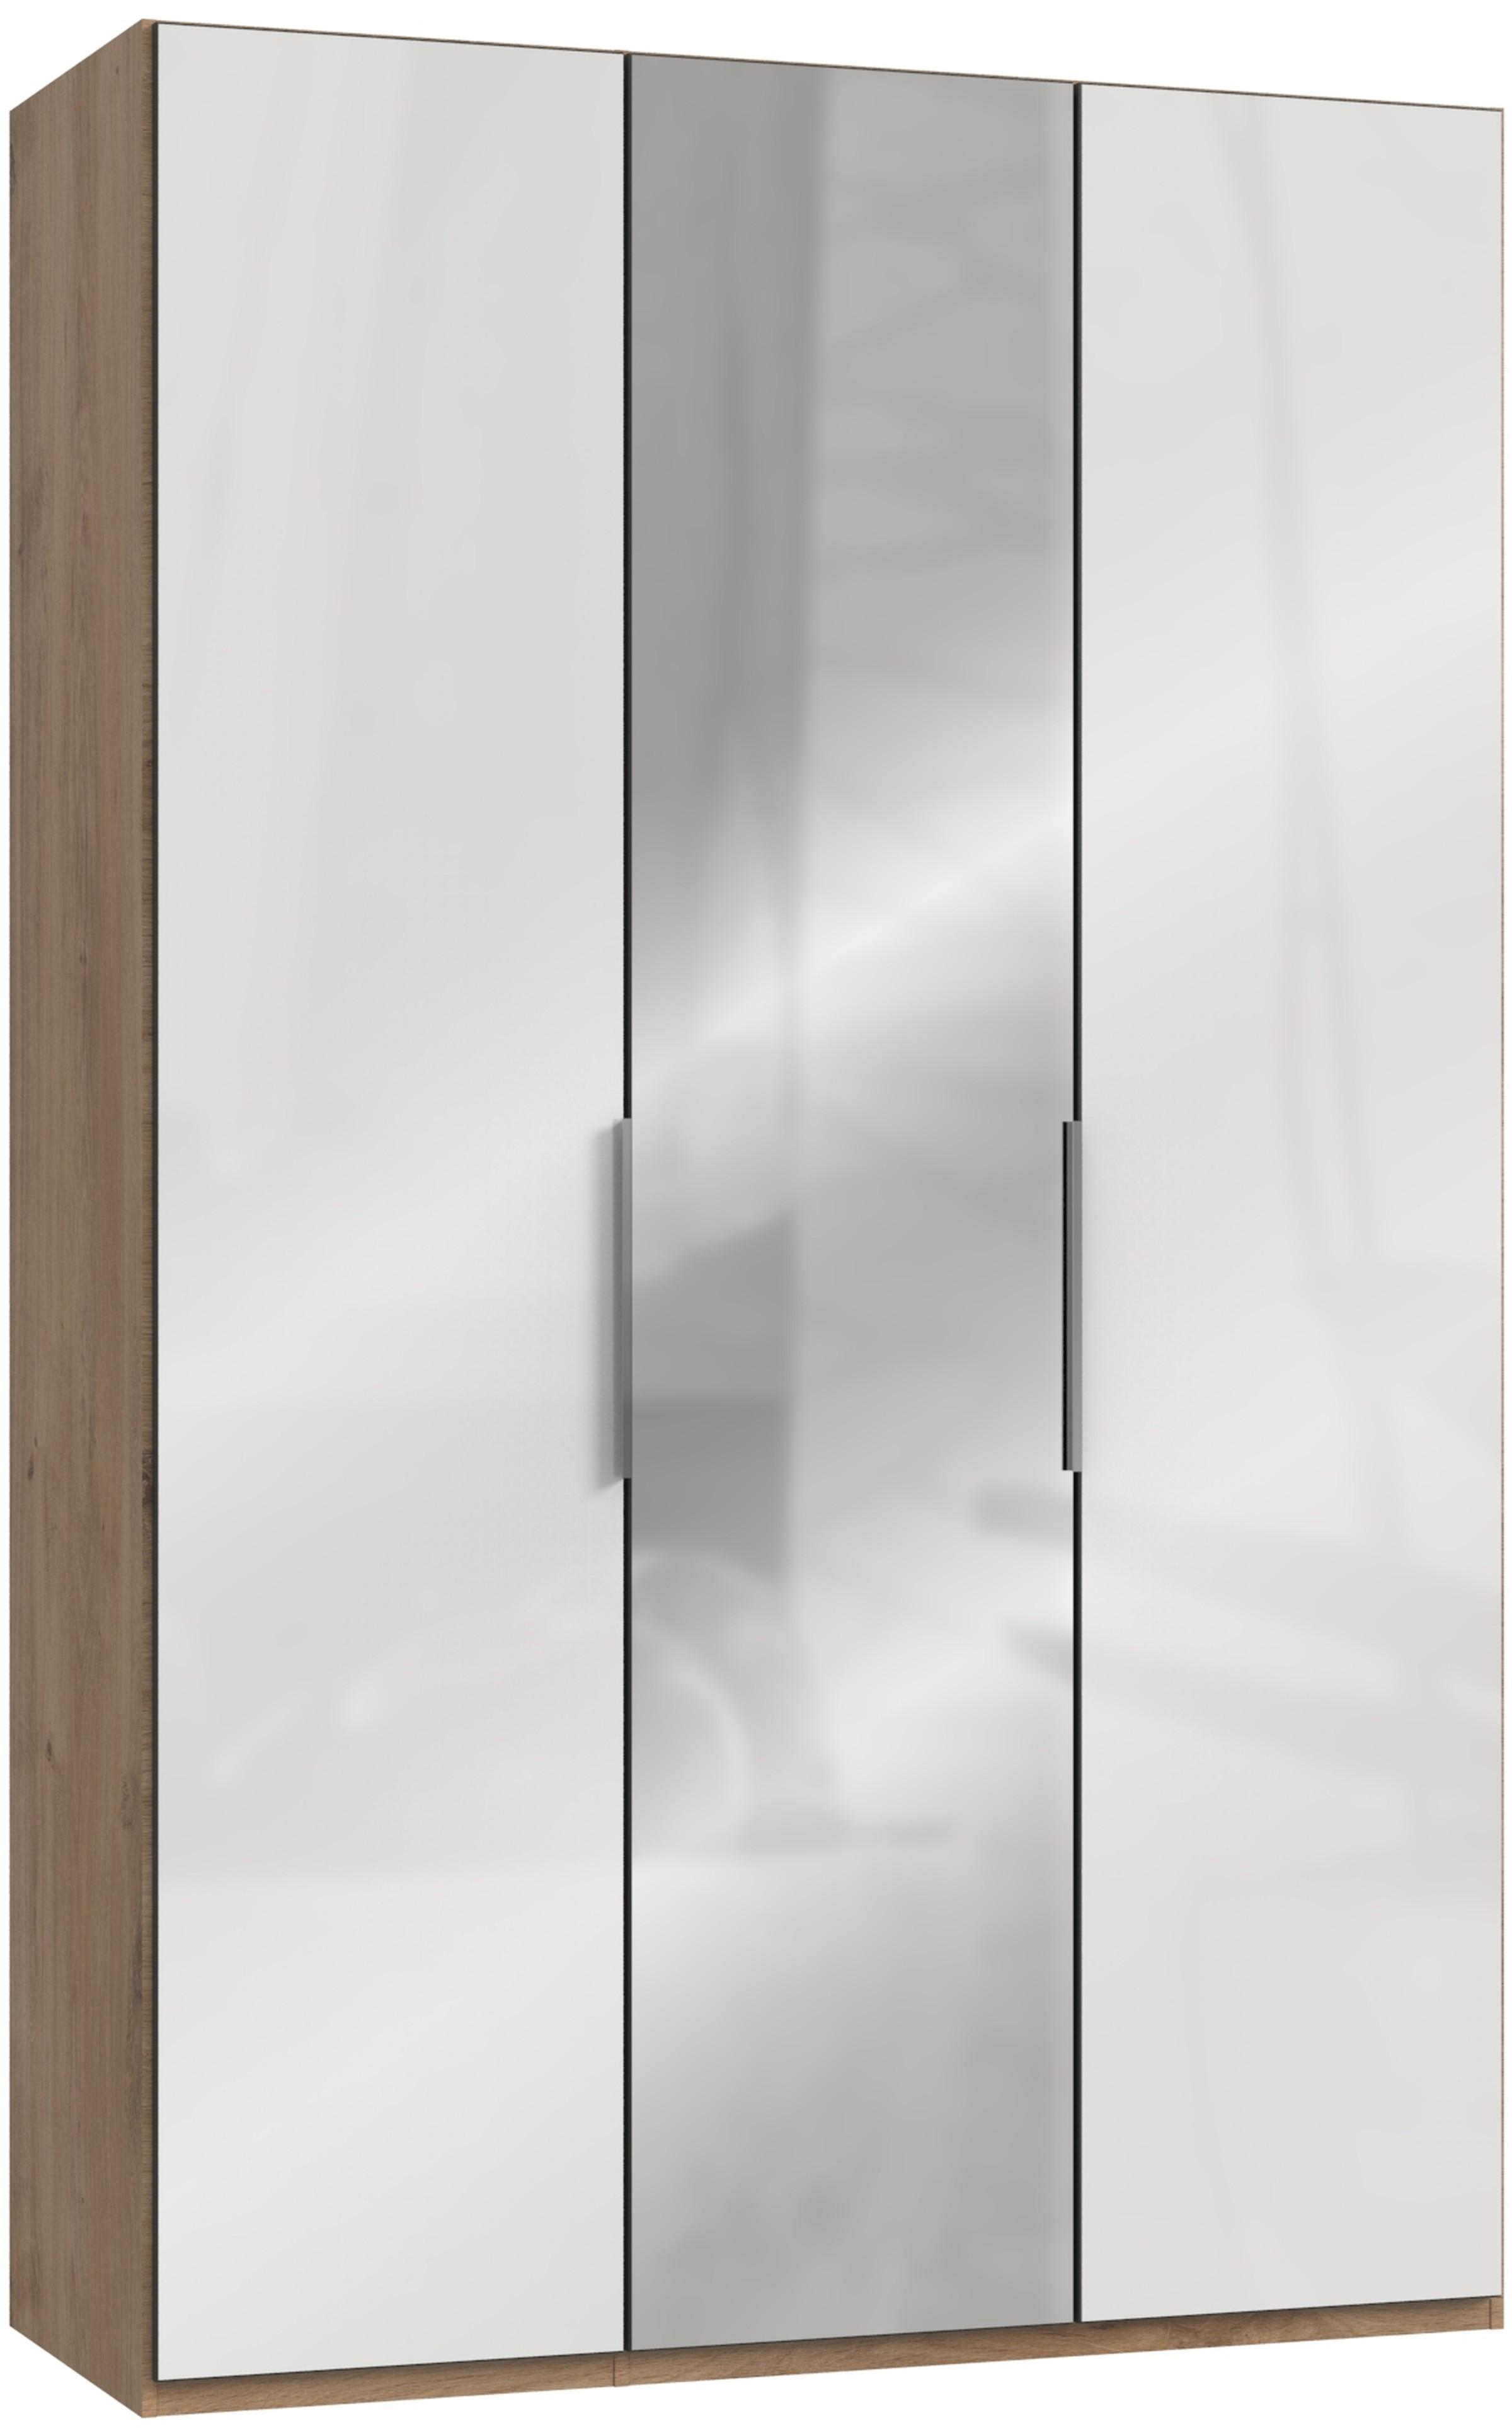 Drehtürenschrank150cm Level, Weiß/Eiche Dekor - Eichefarben/Weiß, MODERN, Holzwerkstoff (150/236/58cm) - MID.YOU